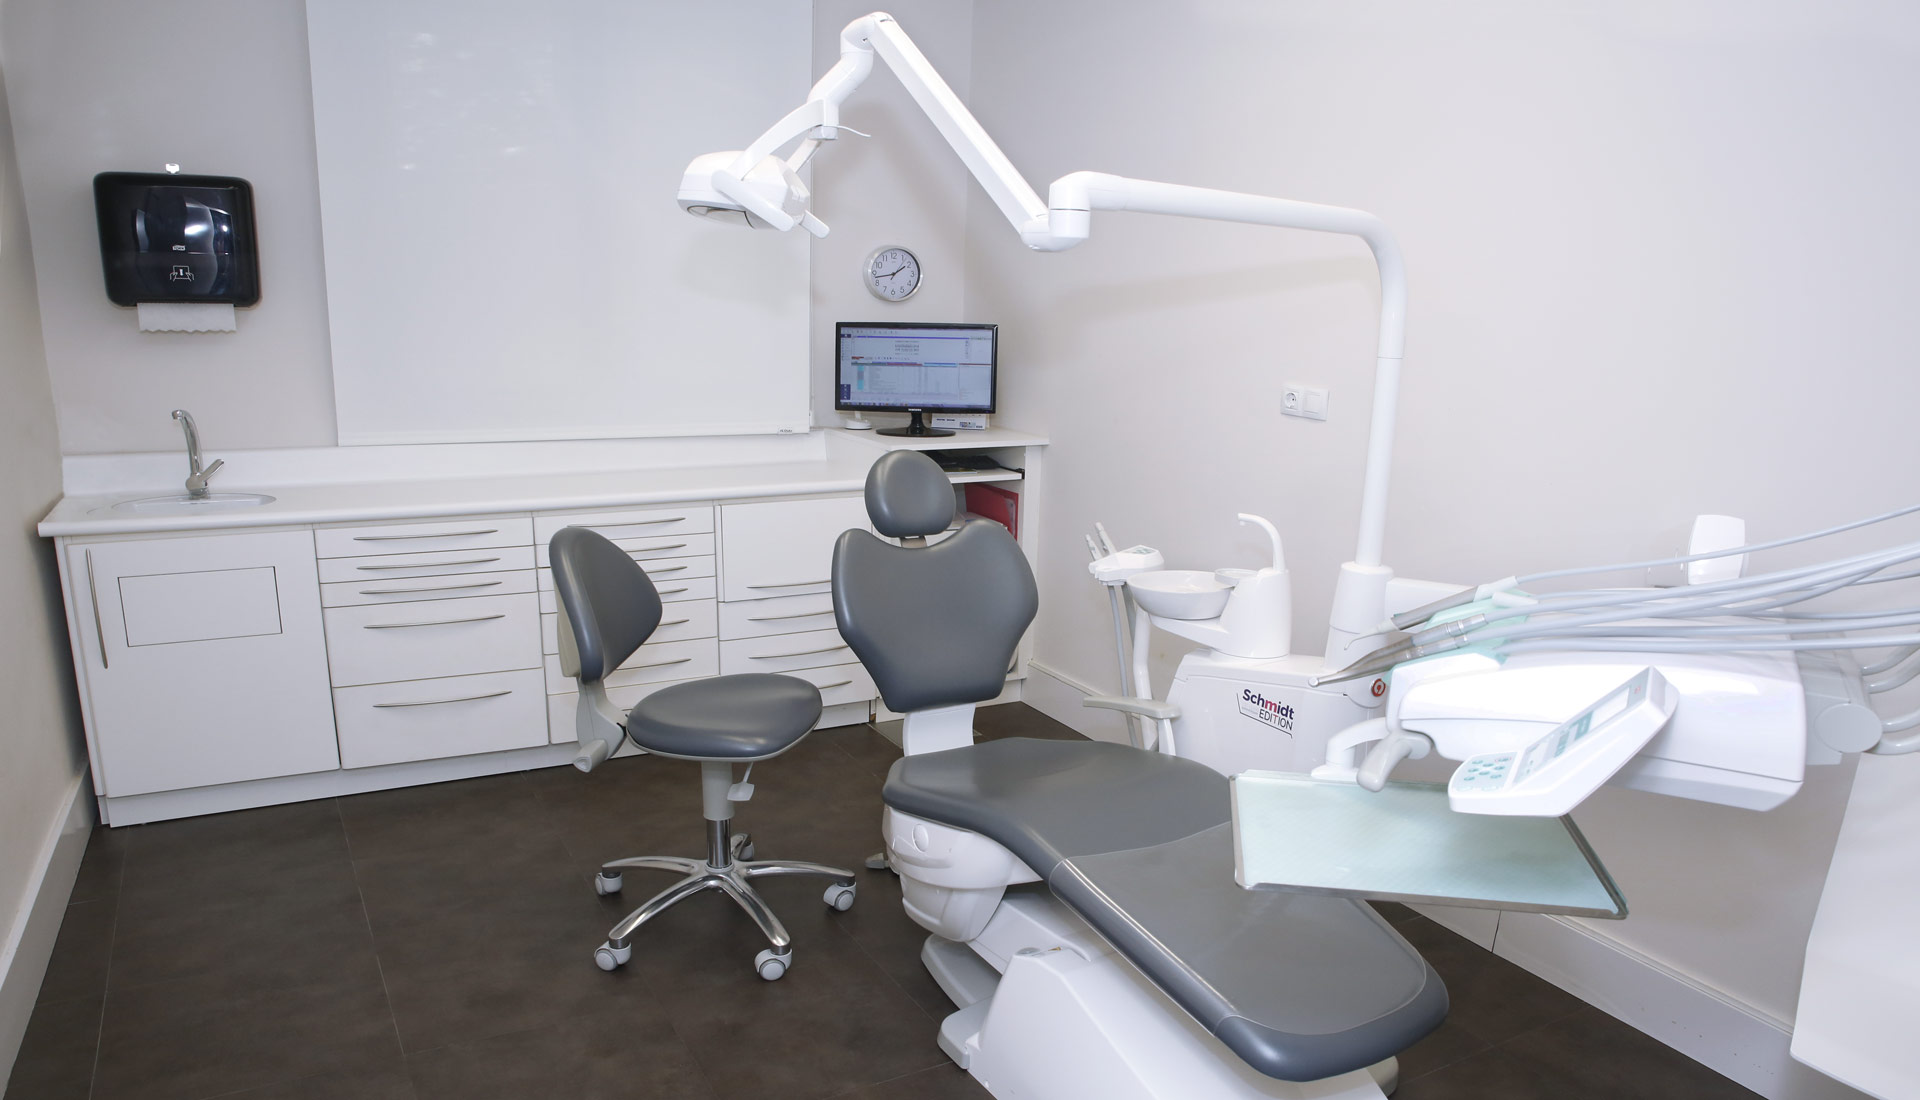 Artdental-Clinica-Dental-Gabinete-Arguedas-2-2021_33A2441-2